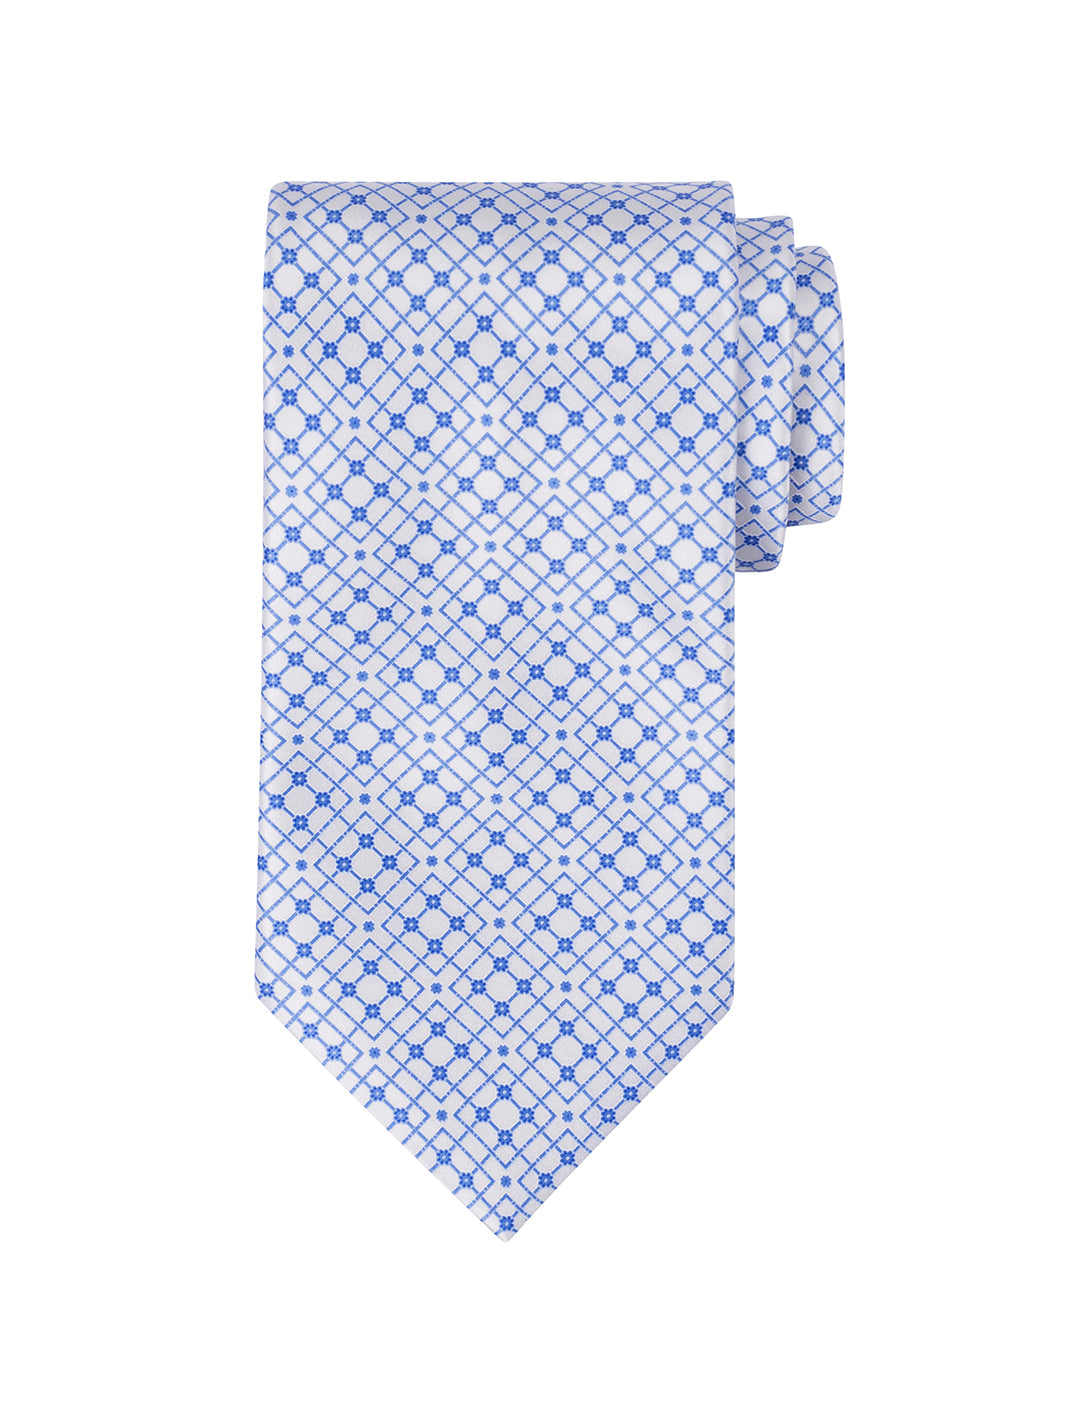 Men's Stefano Ricci  Tie - Blue and White